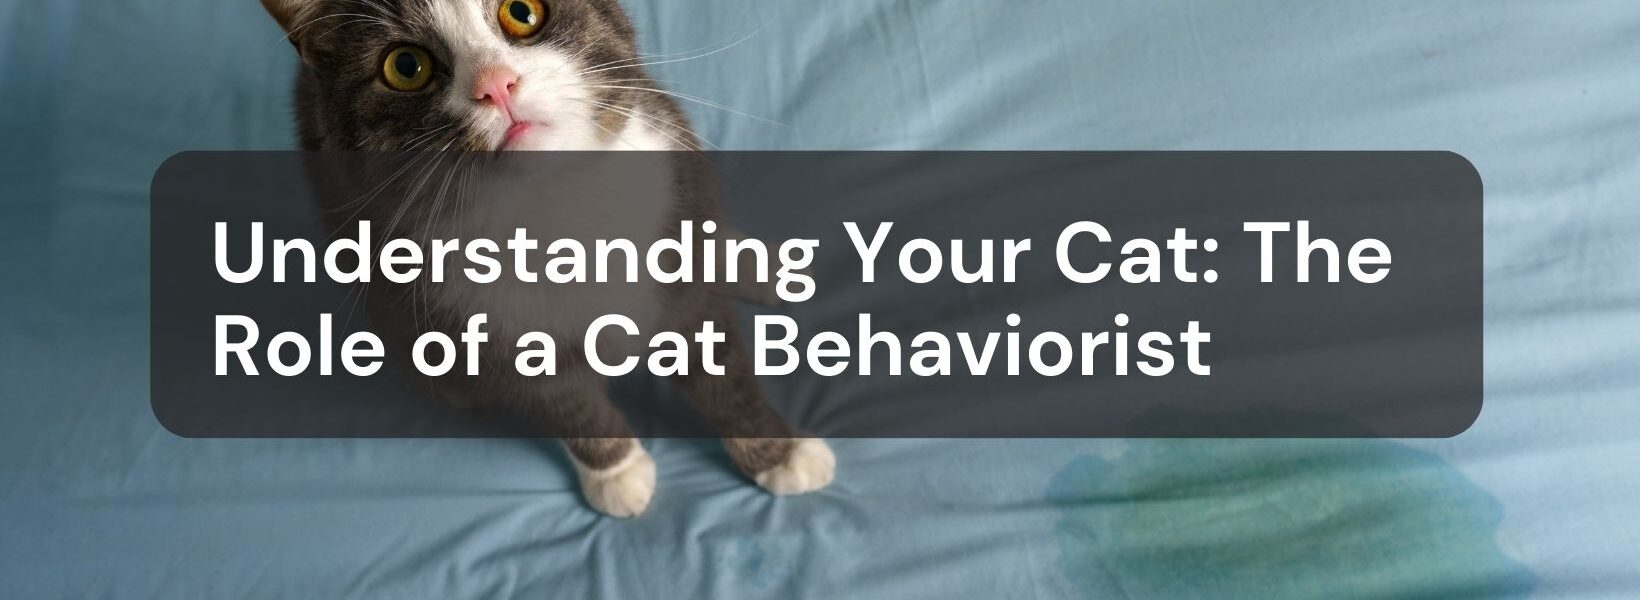 Cat Behaviorist